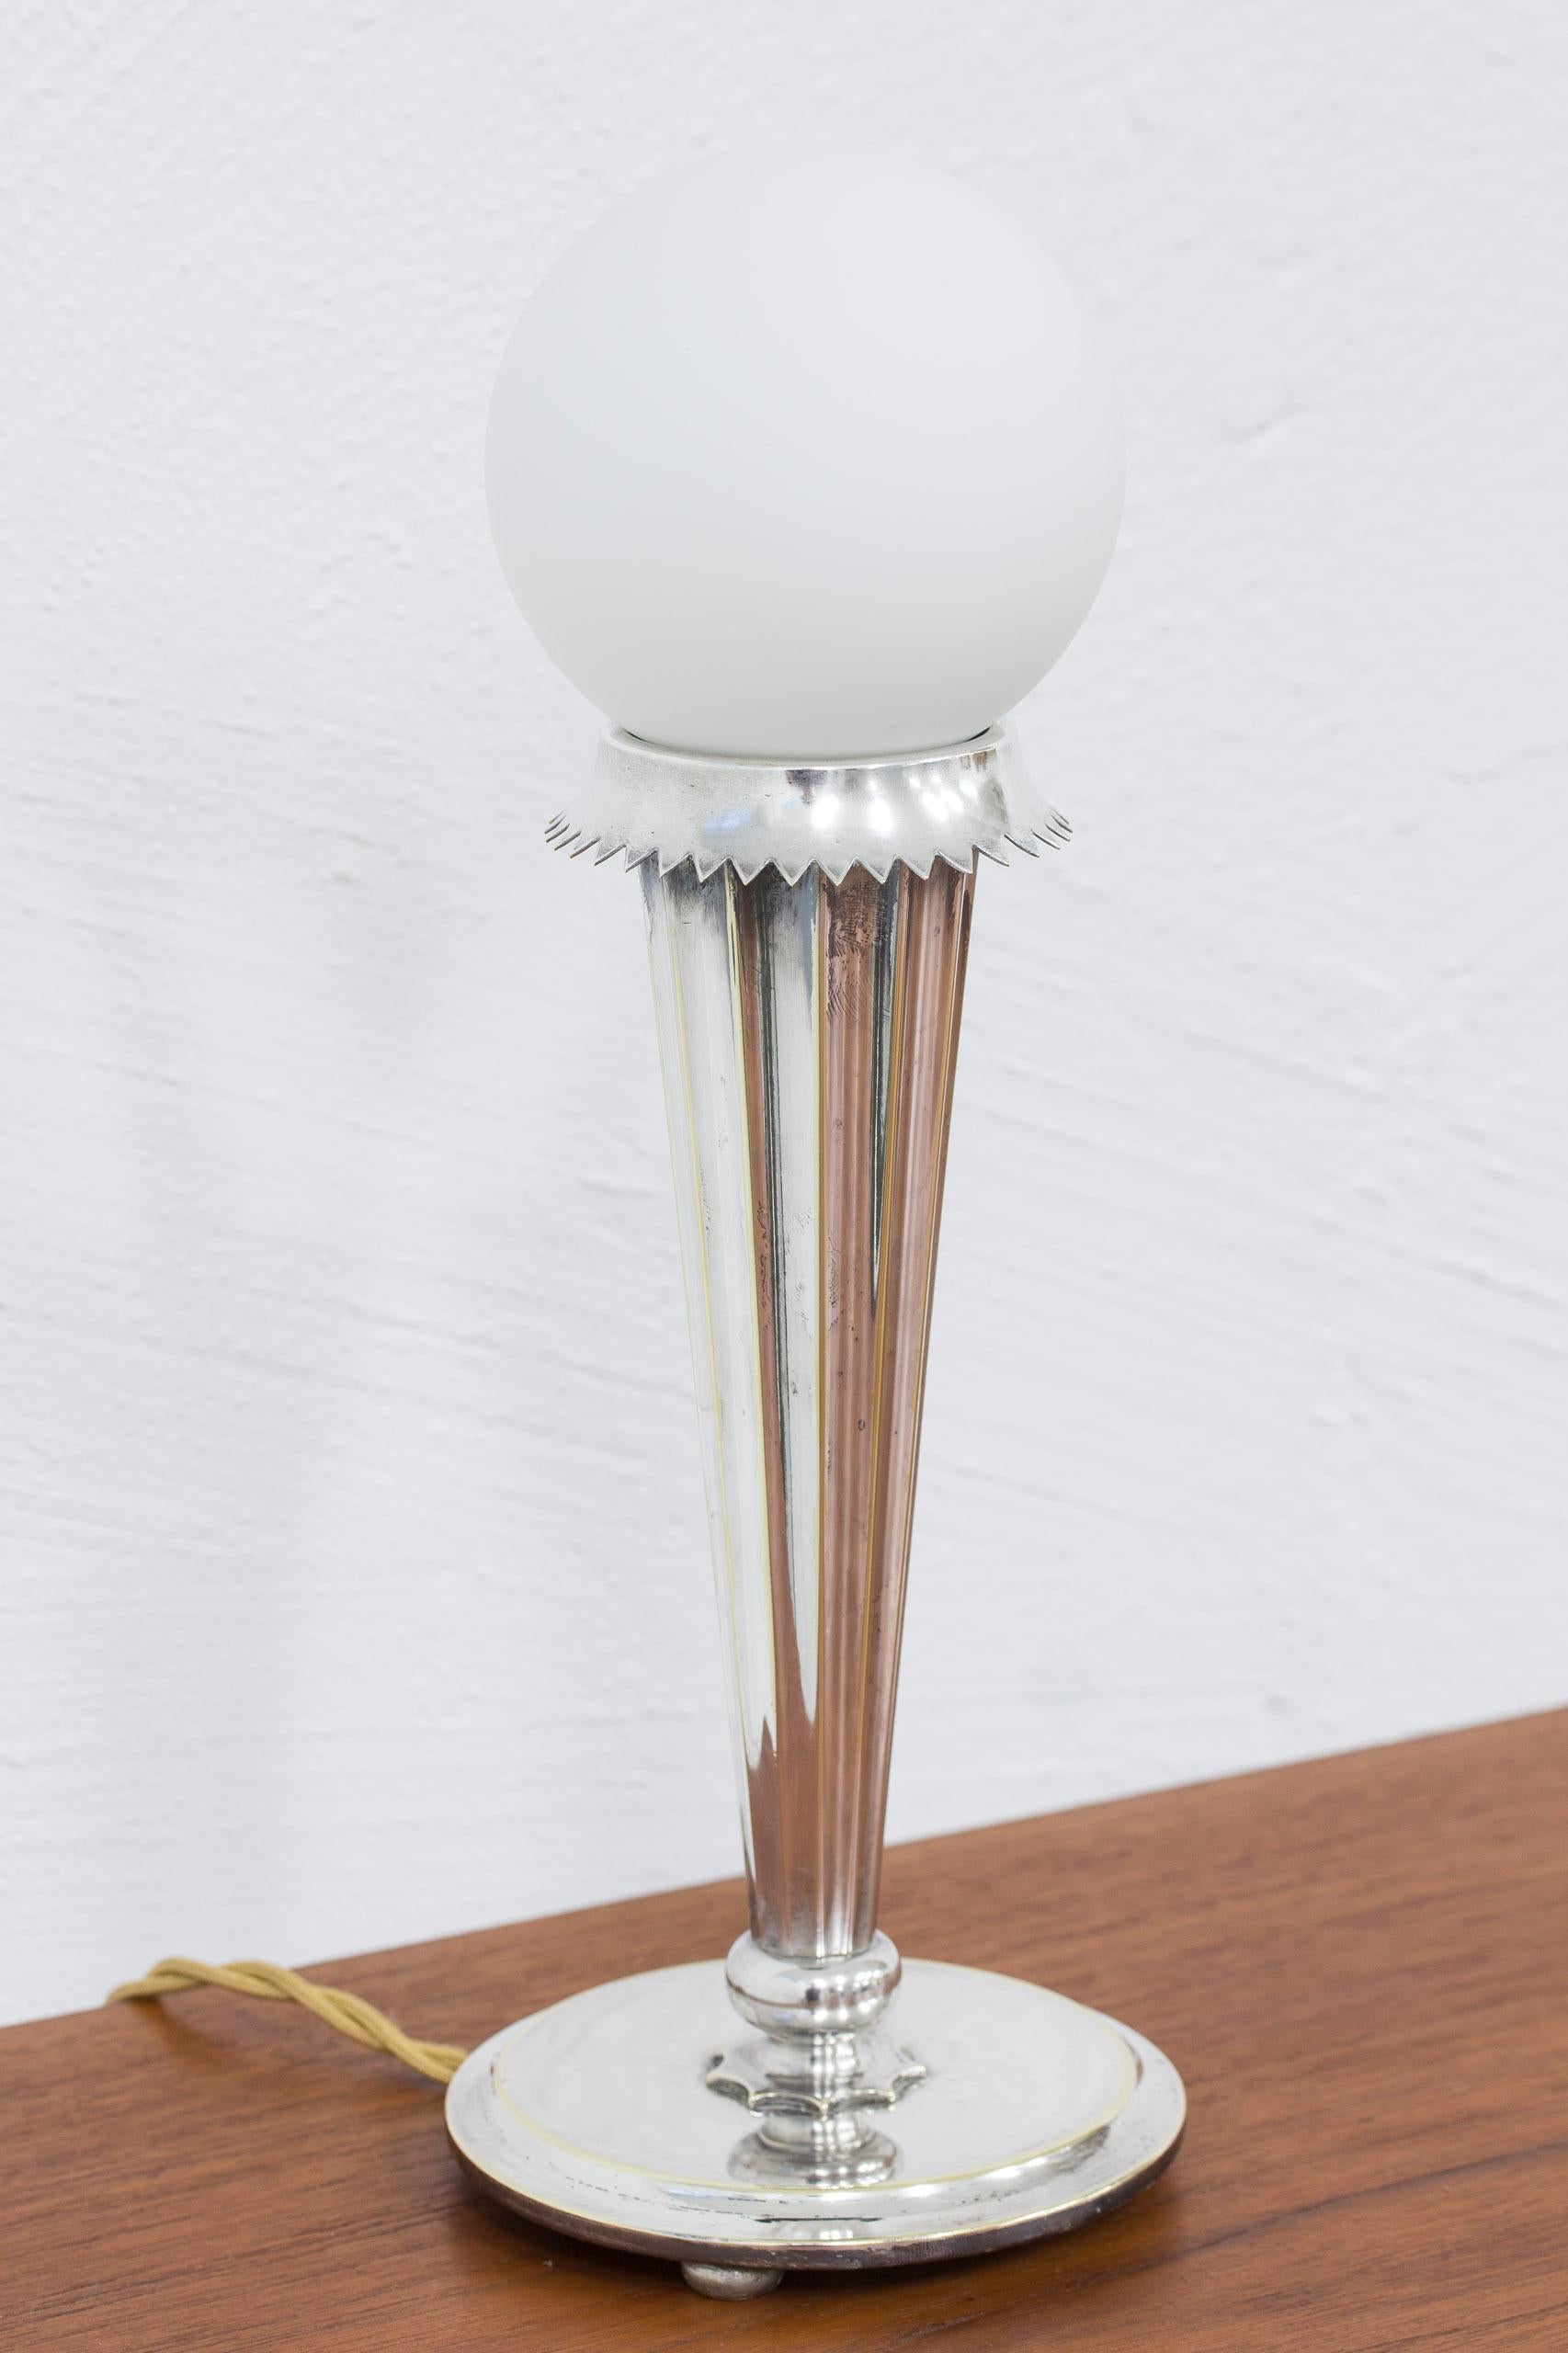 Lampe de table 6853 conçue par Harald Elof Notini. Produit par Böhlmarks lampfabrik à Stockholm, Suède, dans les années 1920. Fabriqué en laiton argenté avec un abat-jour en verre opale de date ultérieure. Bon état vintage avec patine et usure liées